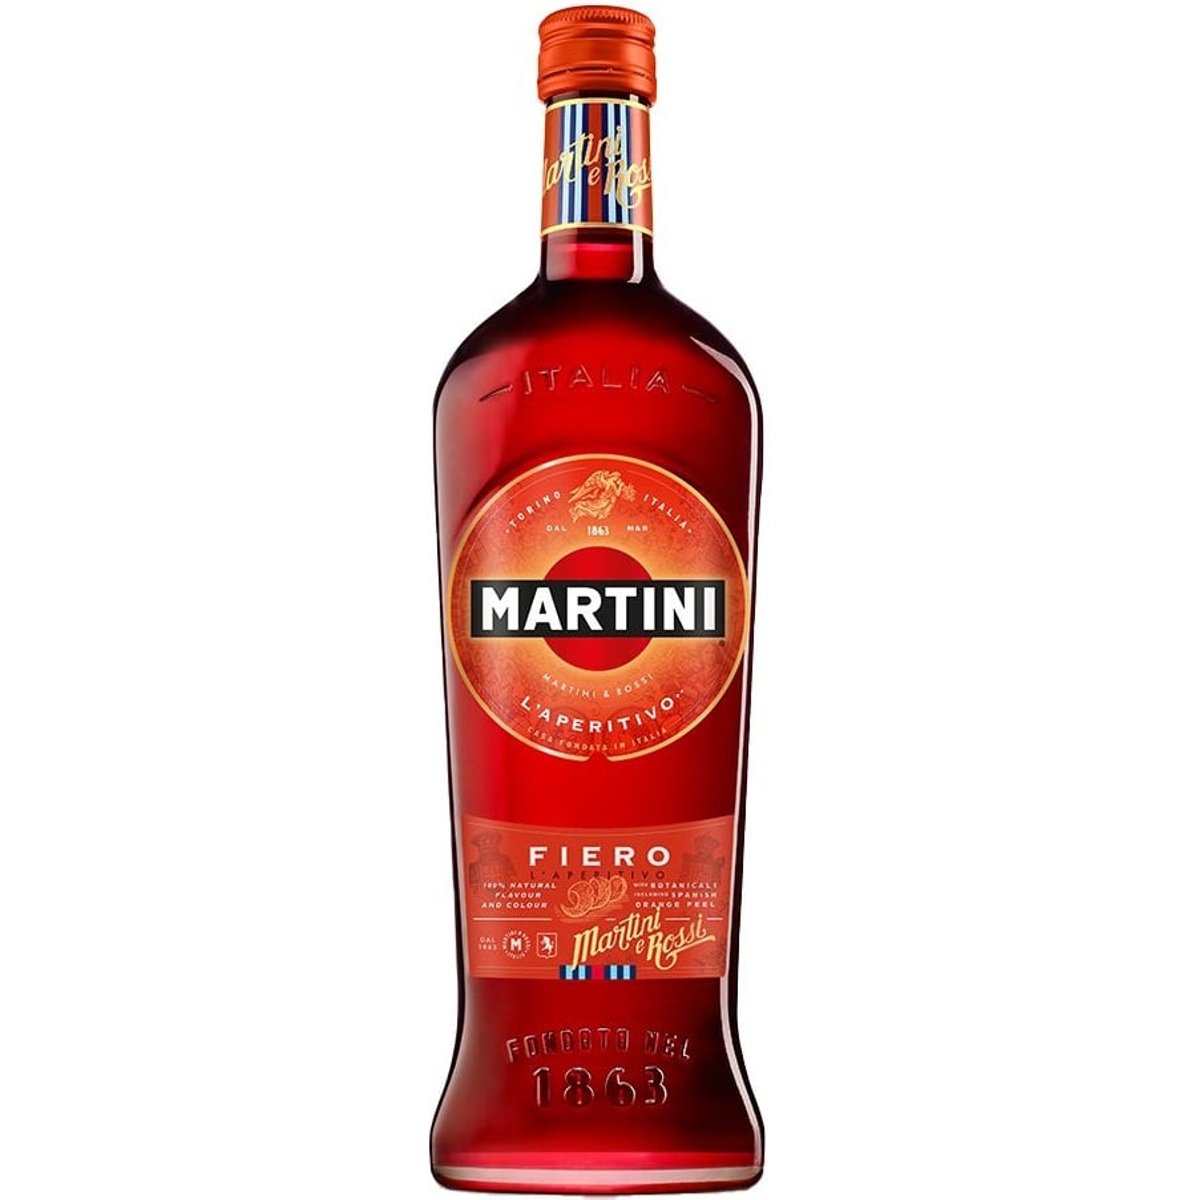 Martini Fiero 14,9%